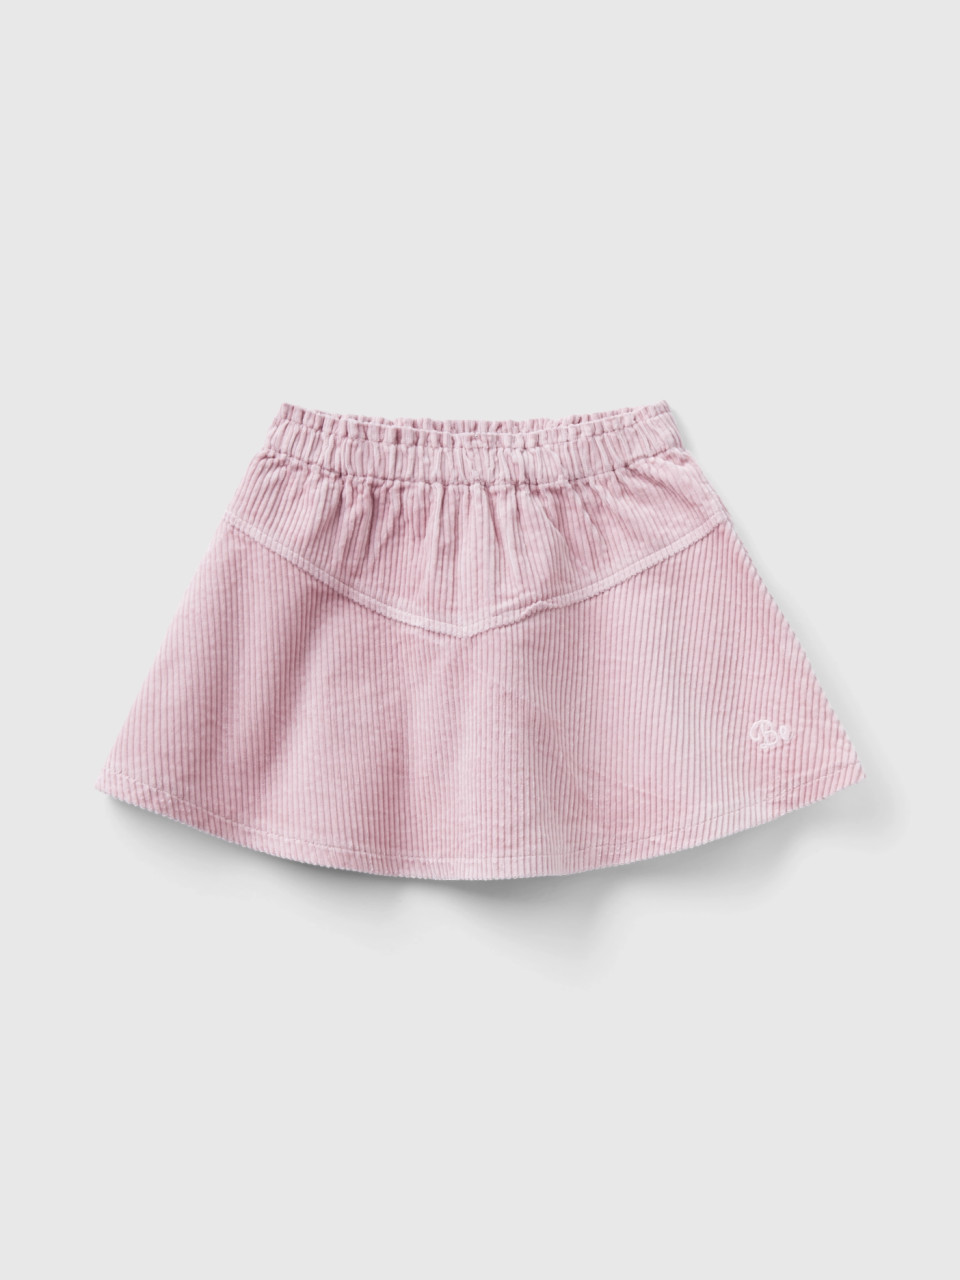 Benetton, Corduroy Mini Skirt, Pink, Kids